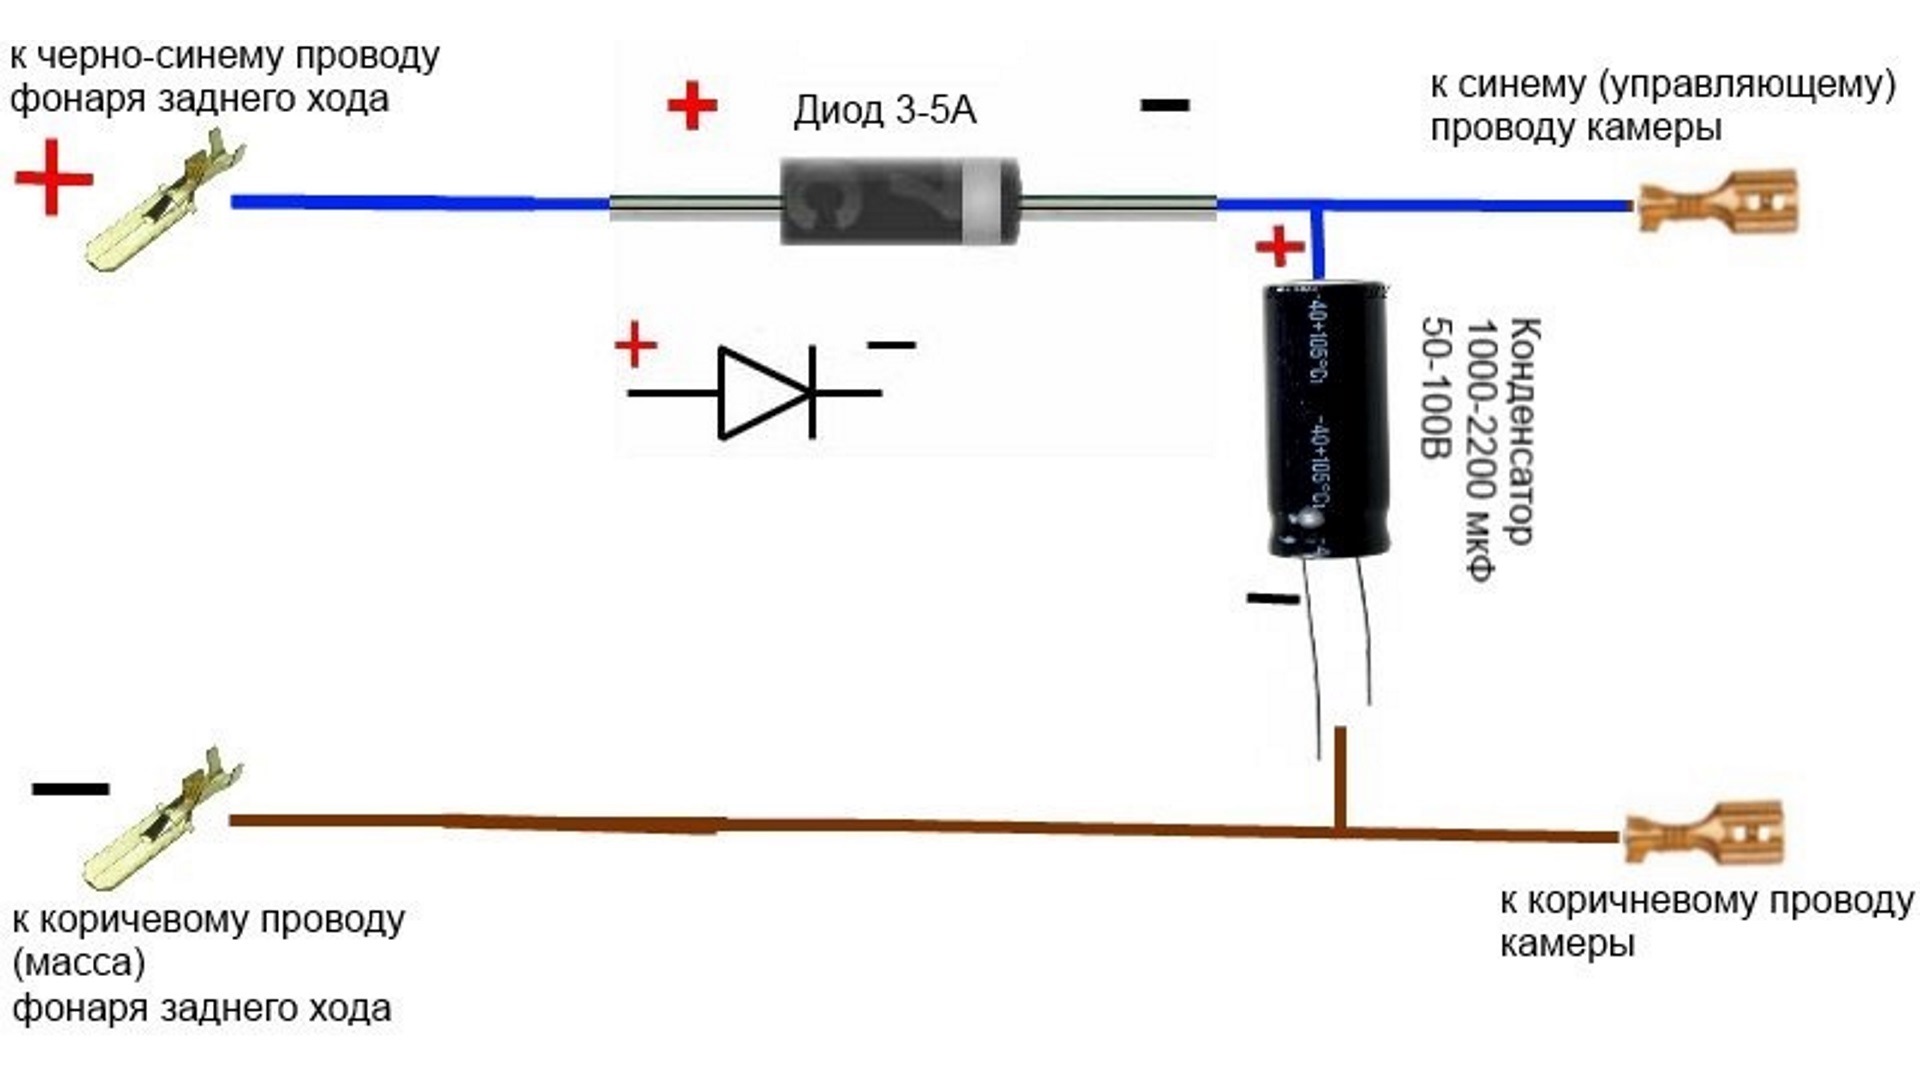 Включение диода в цепь. Схема подключения магнитолы через конденсатор. Схема подключения магнитолы через диоды. Схема подключения магнитолы через конденсатор и диод.